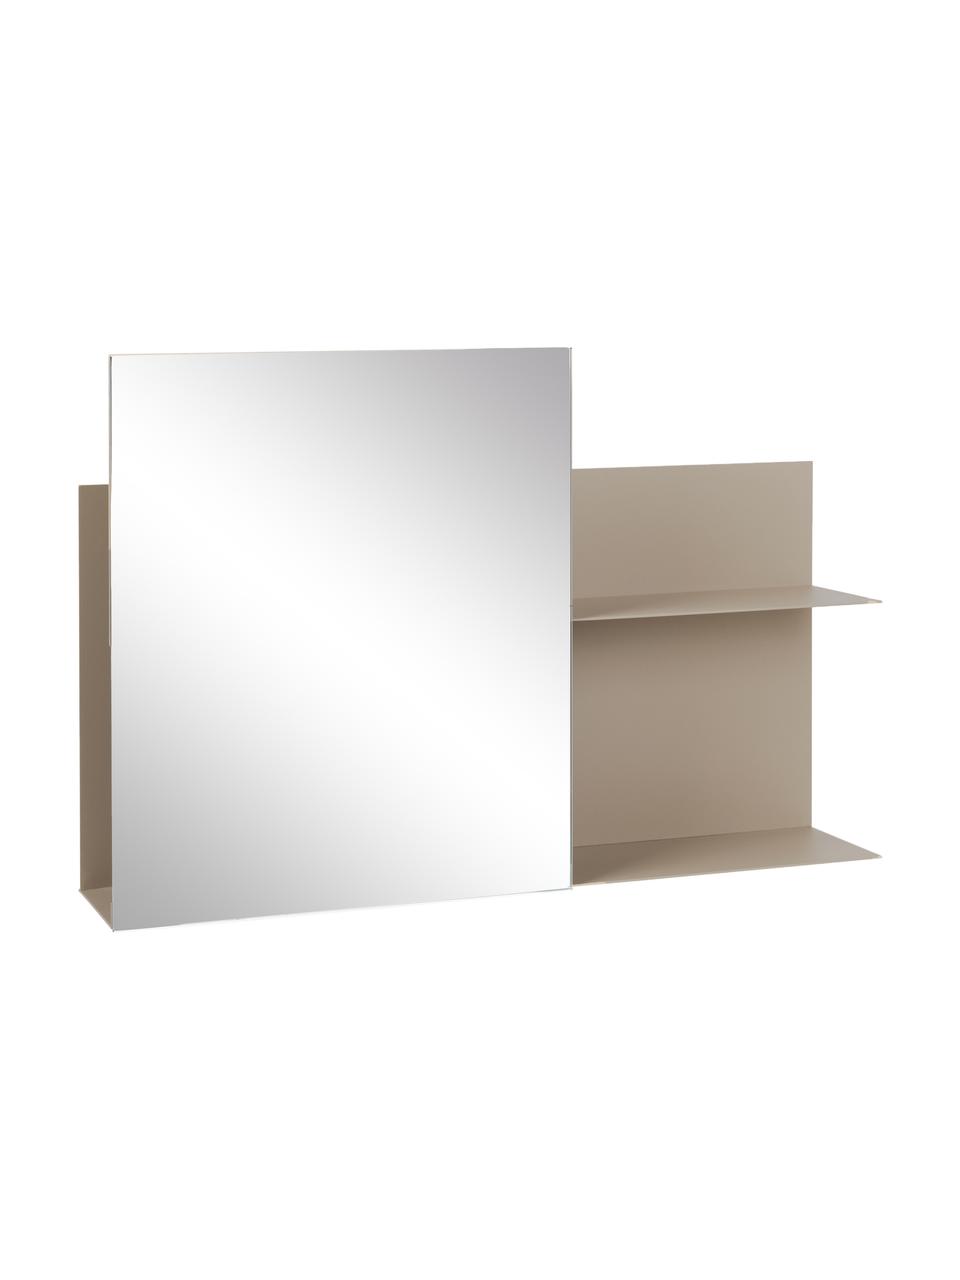 Metall-Wandregal Svante mit Spiegel in Beige, Spiegelfläche: Spiegelglas, BEIGE, 51 x 25 cm